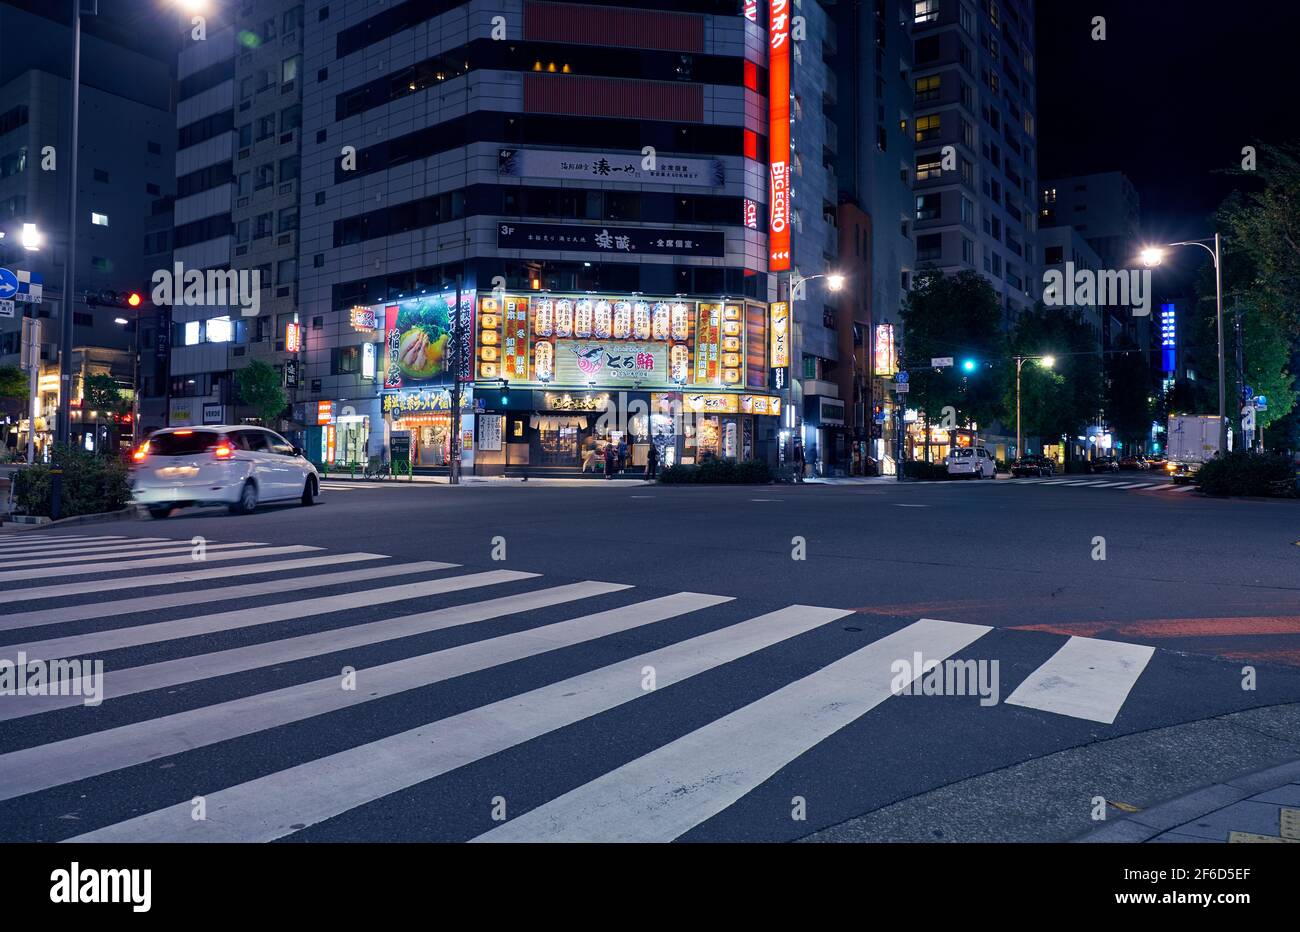 Tokio, Japan - 22. Oktober 2019: Die nächtliche Beleuchtung traditioneller japanischer Restaurants am Bahnhof Ningyocho. Nihonbashi, Chuo, Tokio, Japan. Stockfoto